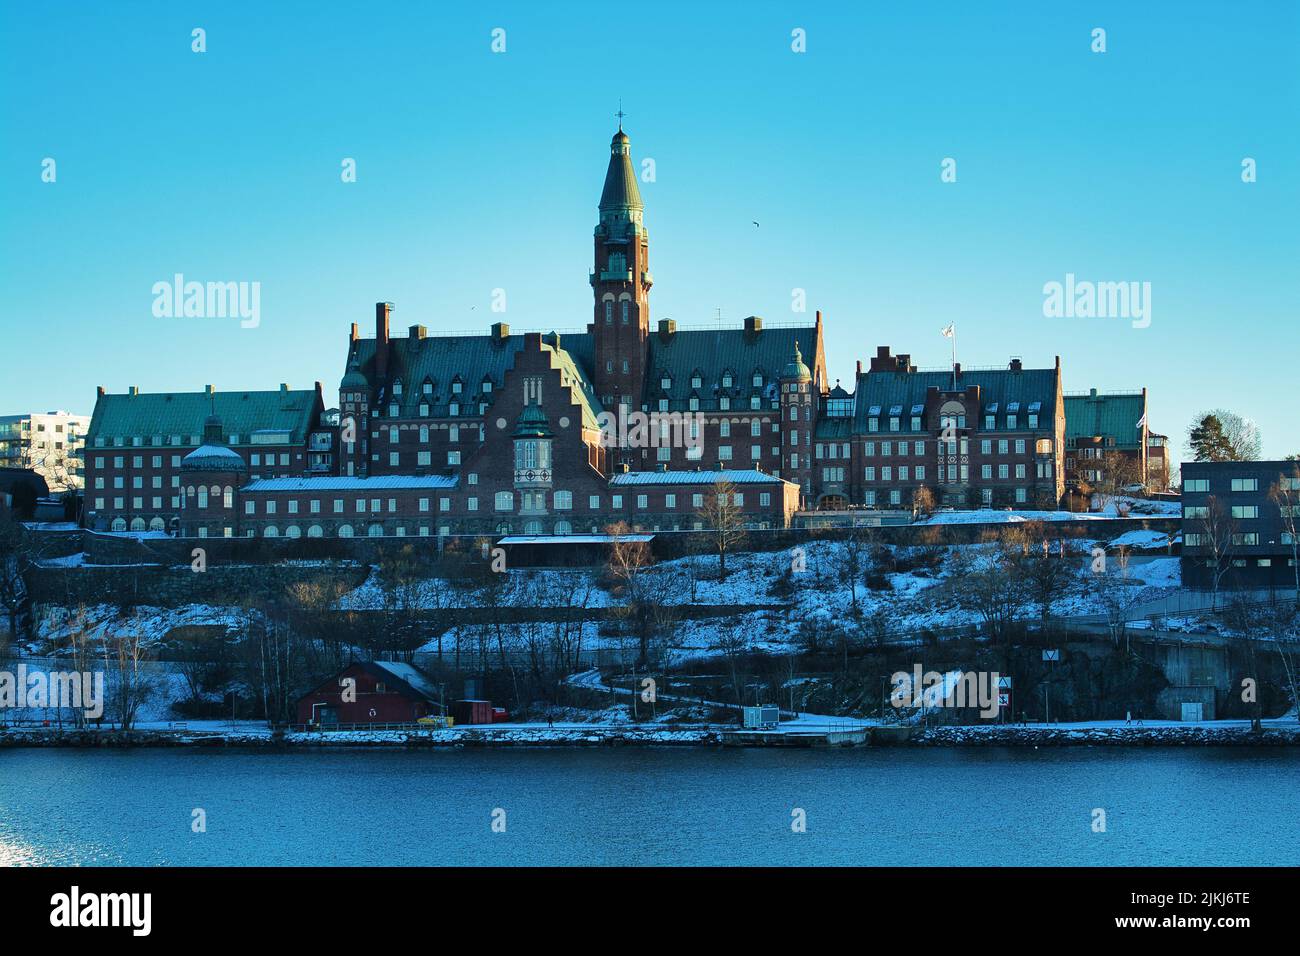 Una giornata invernale brillante nella città di Stoccolma con la casa di riposo Danvikshem sotto un cielo blu chiaro Foto Stock